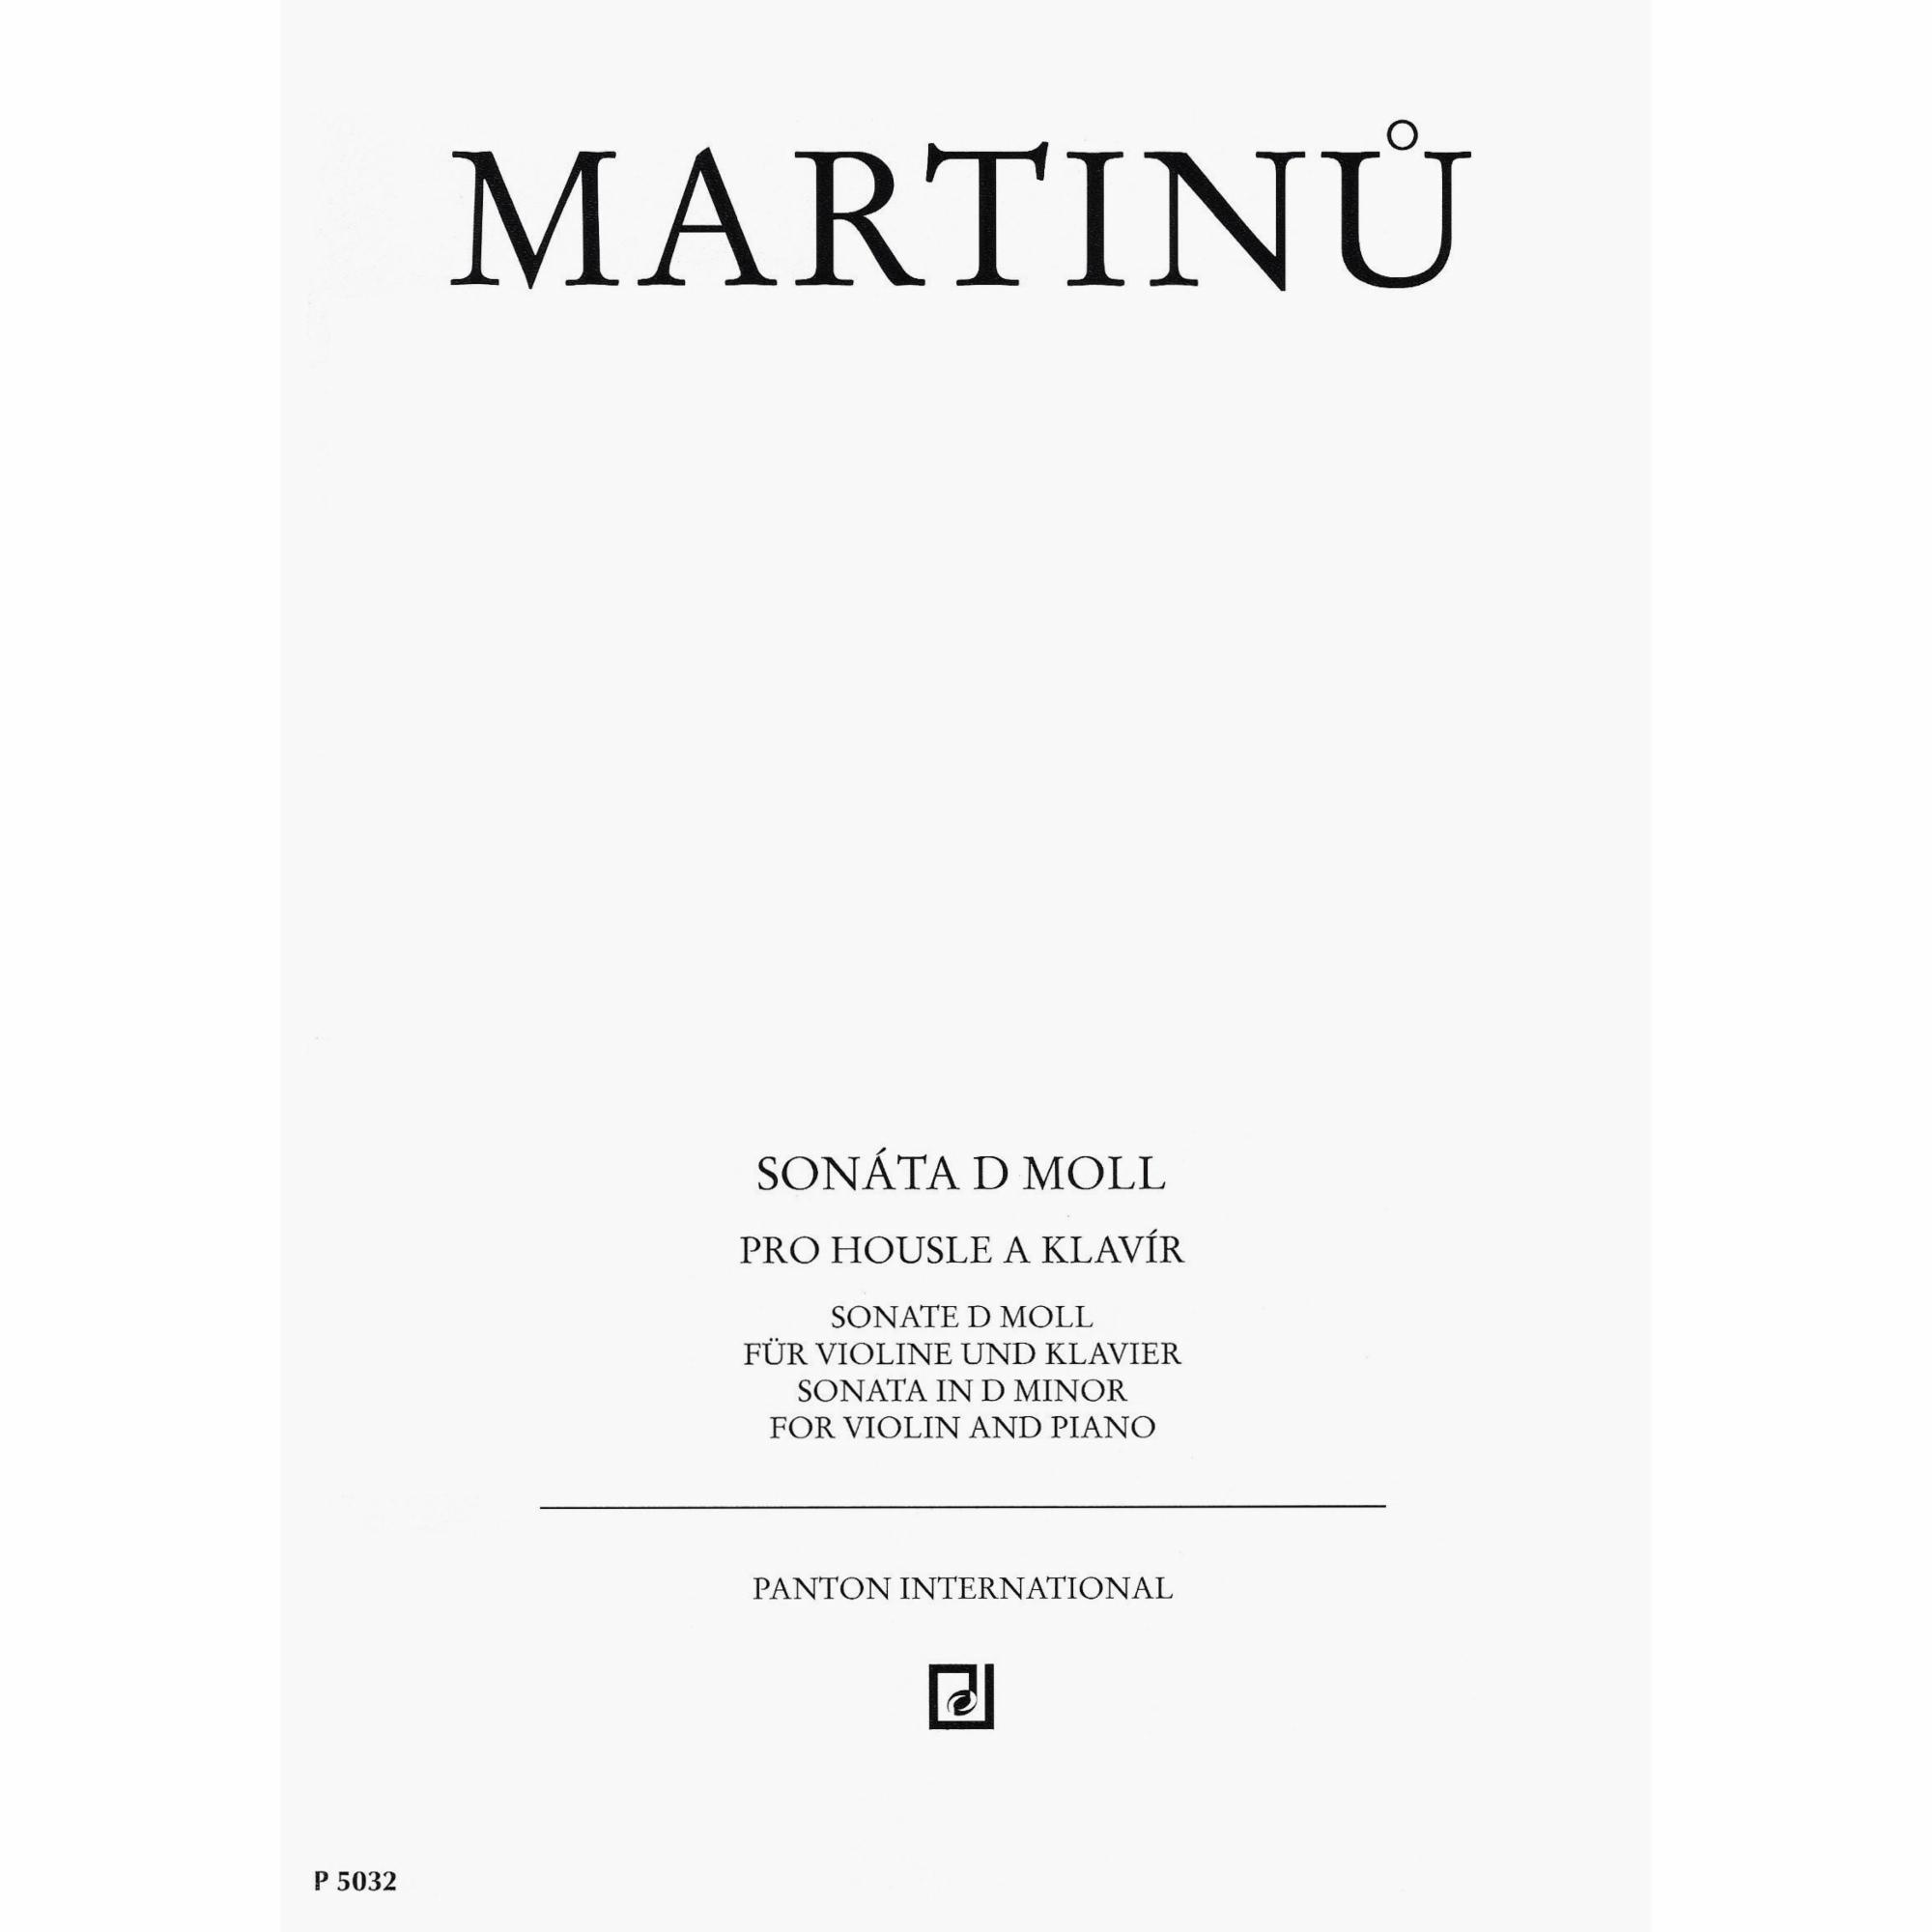 Martinu -- Sonata in D Minor for Violin and Piano